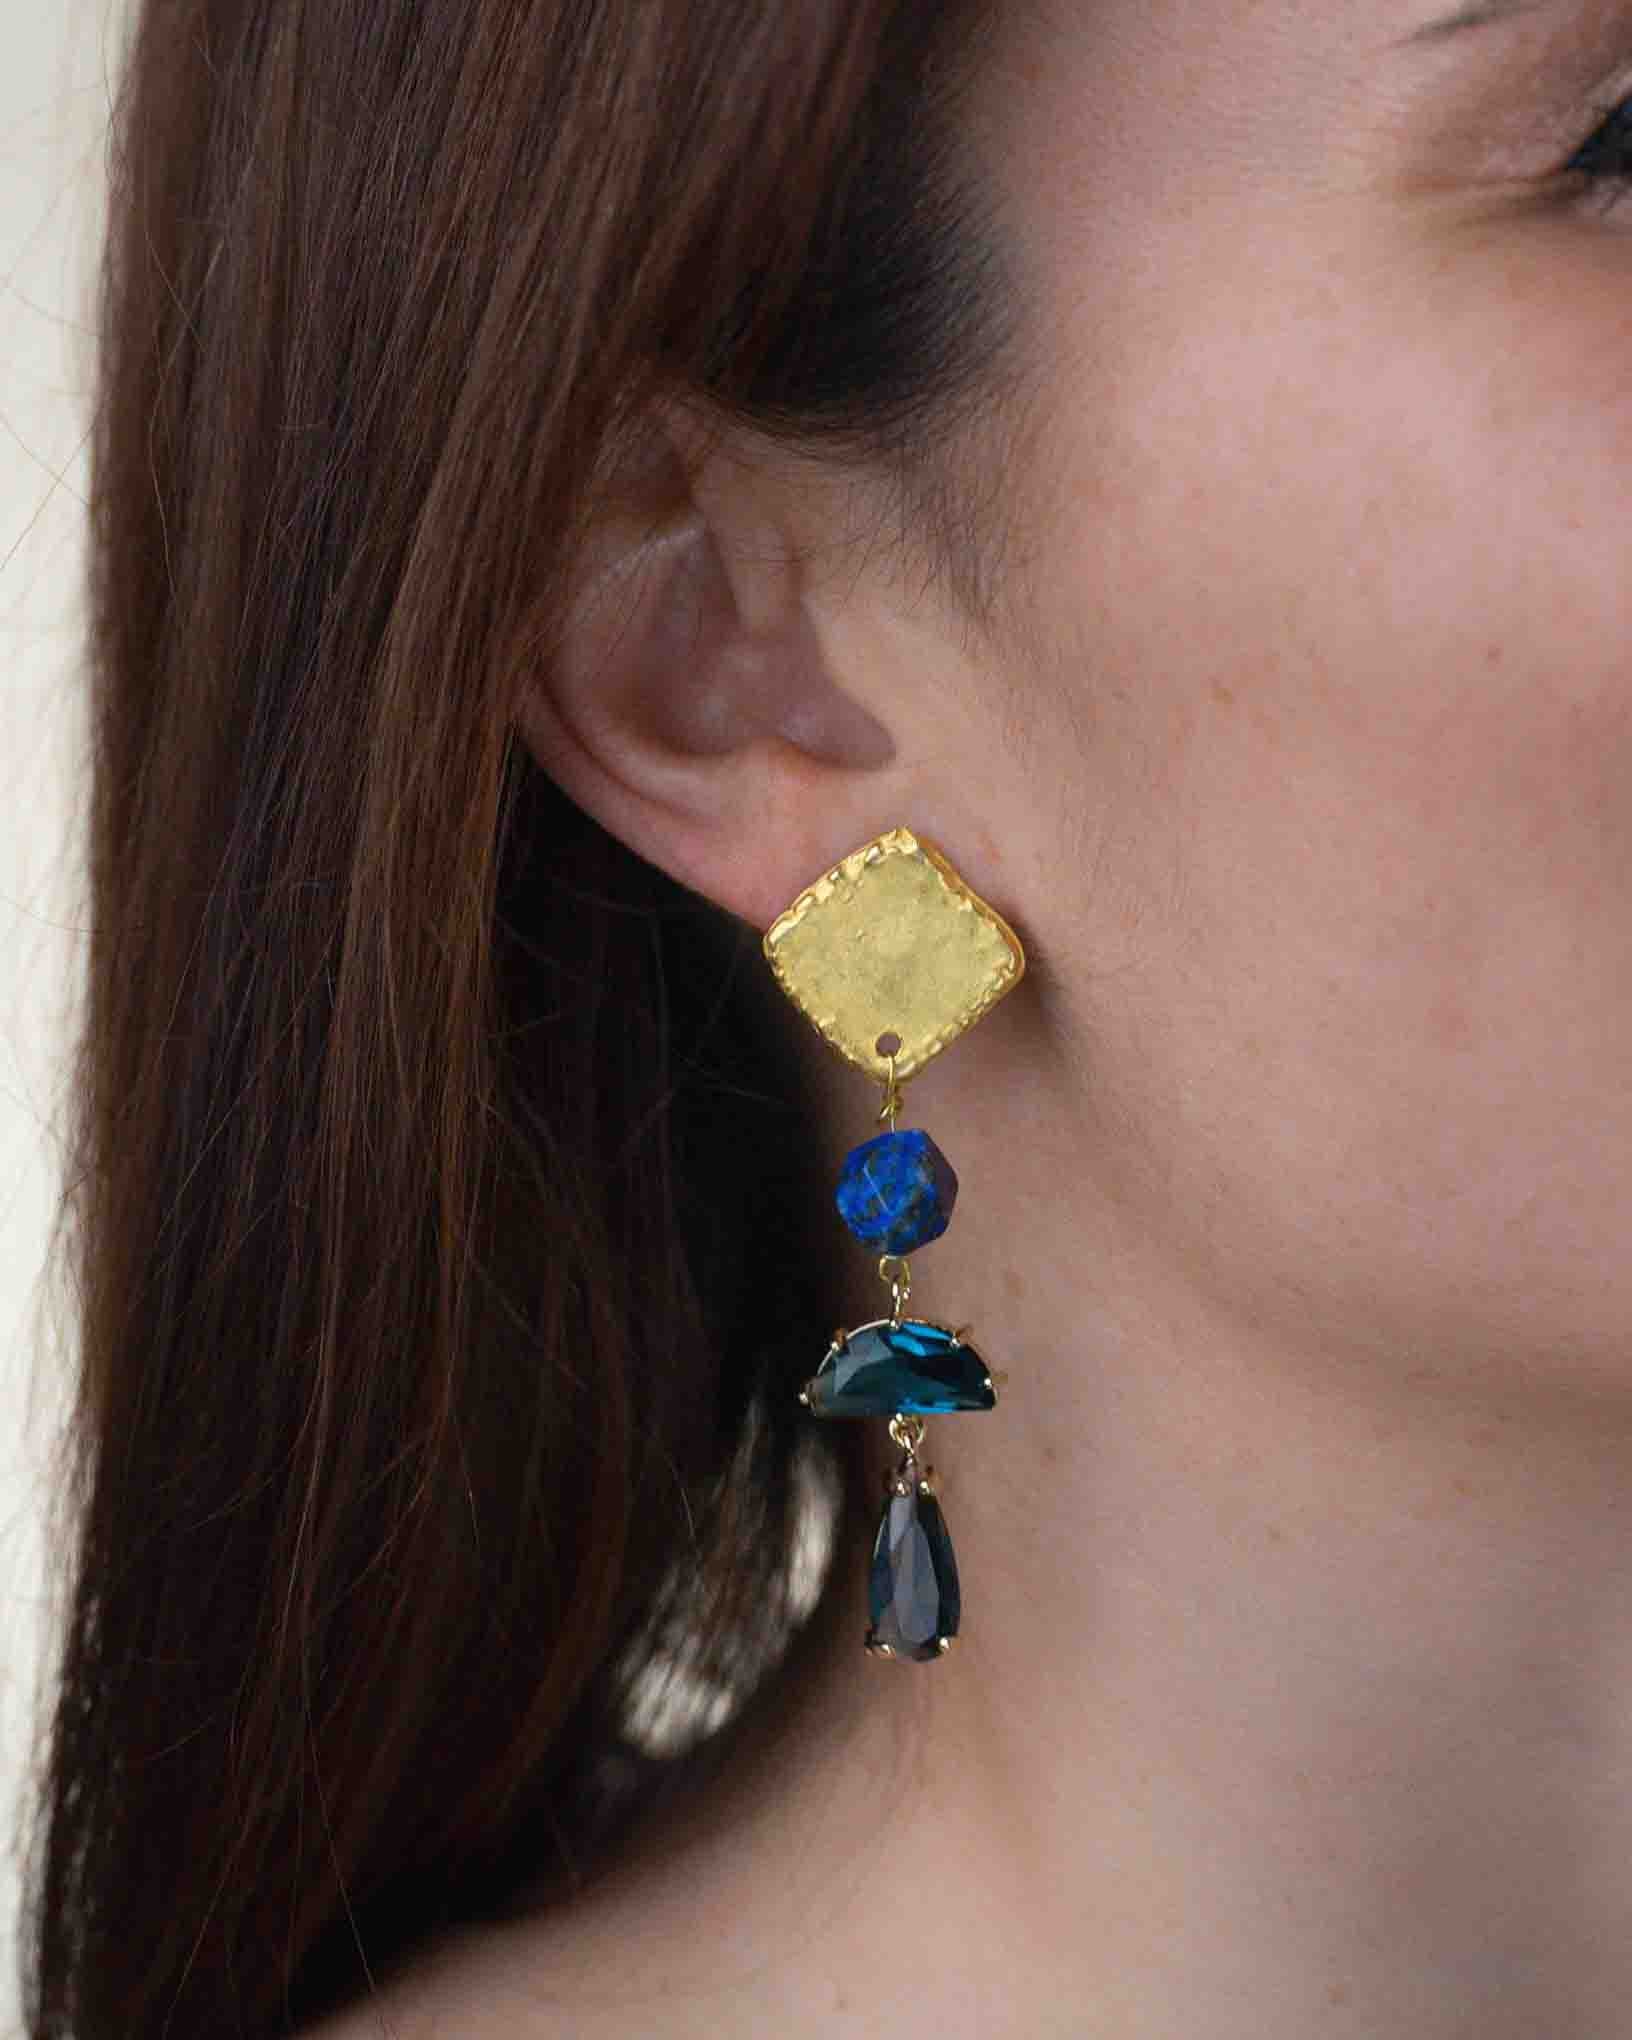 Ohrring Grotta Azzurra aus der Kollektion I Classici von Donna Rachele Jewelry